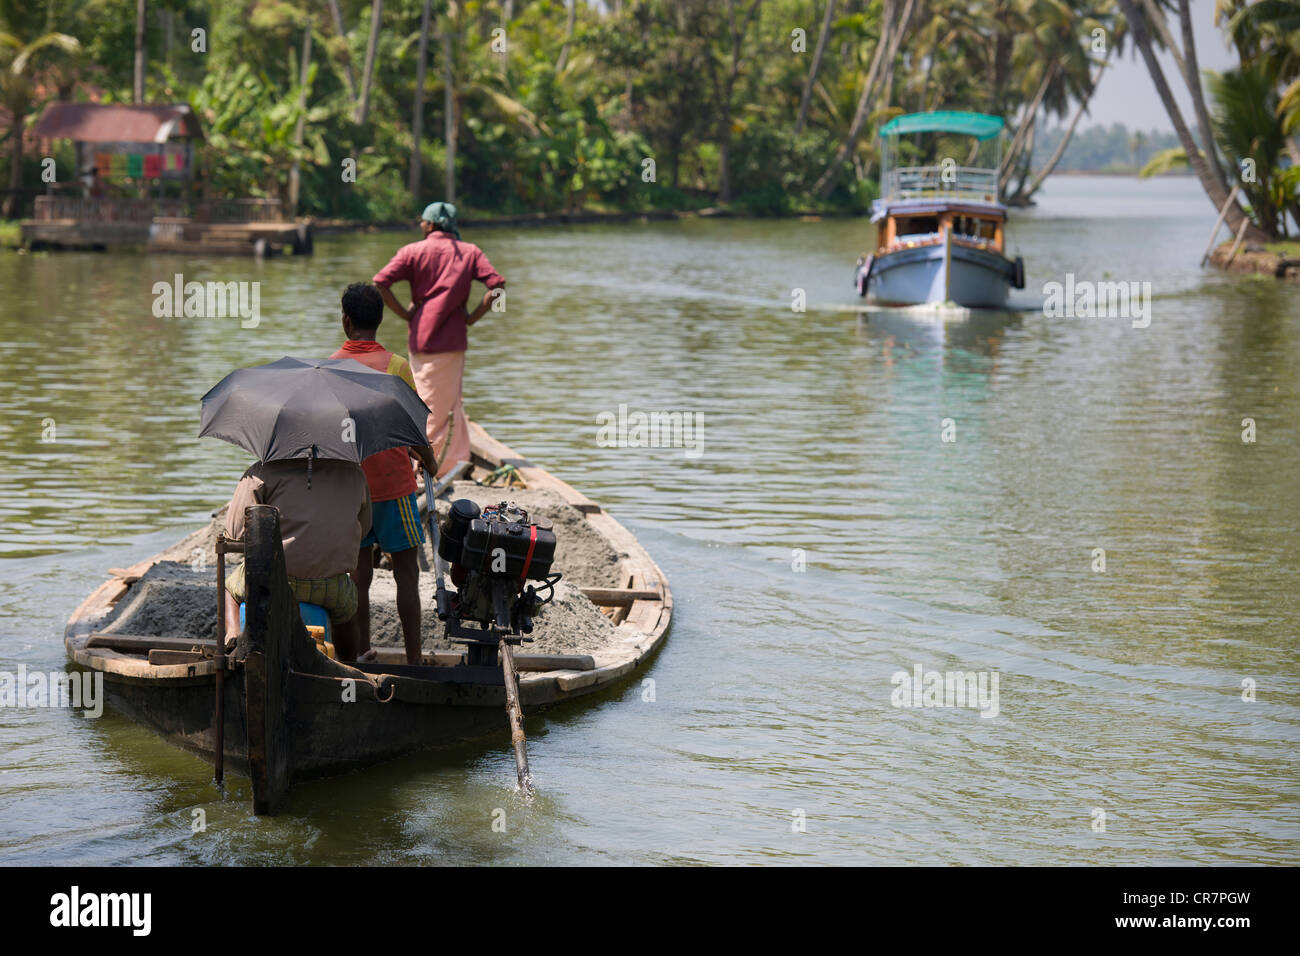 Touristenboot nähert sich einem überladenen Lastkahn in einem Wasserweg der Vattakayal See in der Nähe von Alappuzha (Alleppey), Kerala, Indien Stockfoto